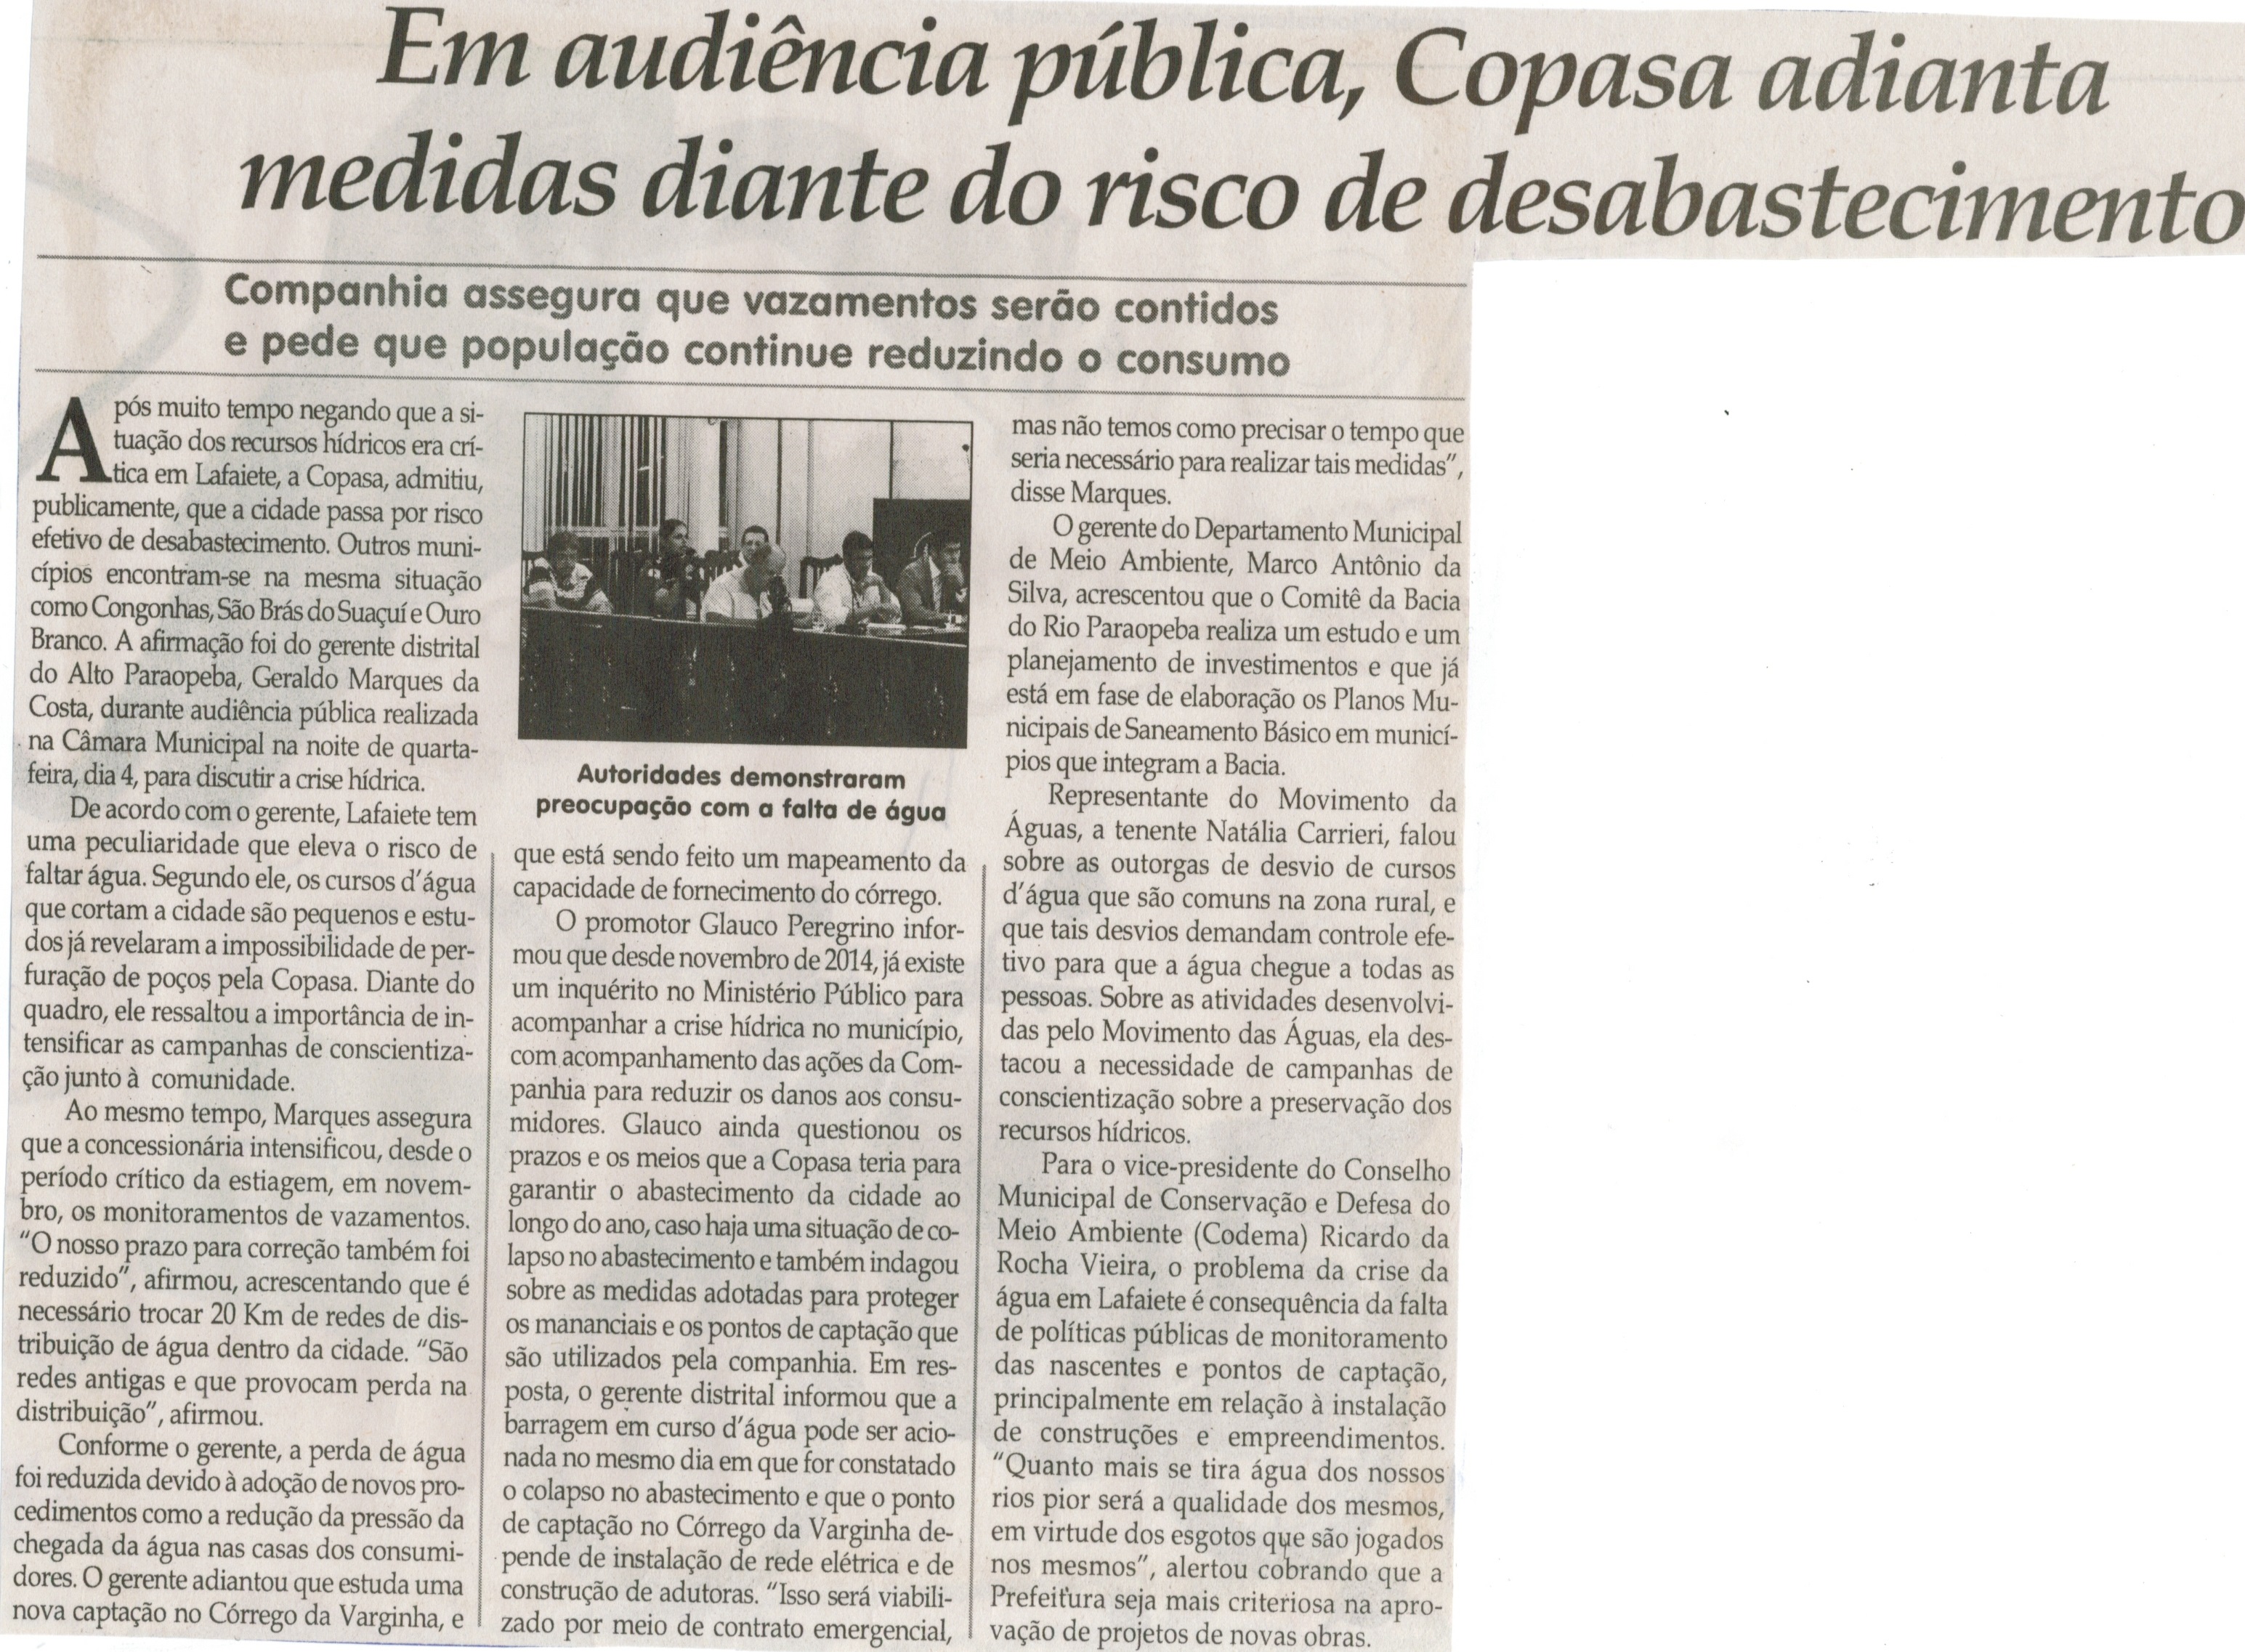 Em audiência pública, Copasa adianta medidas diante do risco de desabastecimento. Jornal Correio da Cidade, Conselheiro Lafaiete, 14 mar. 2015, p. 04.            